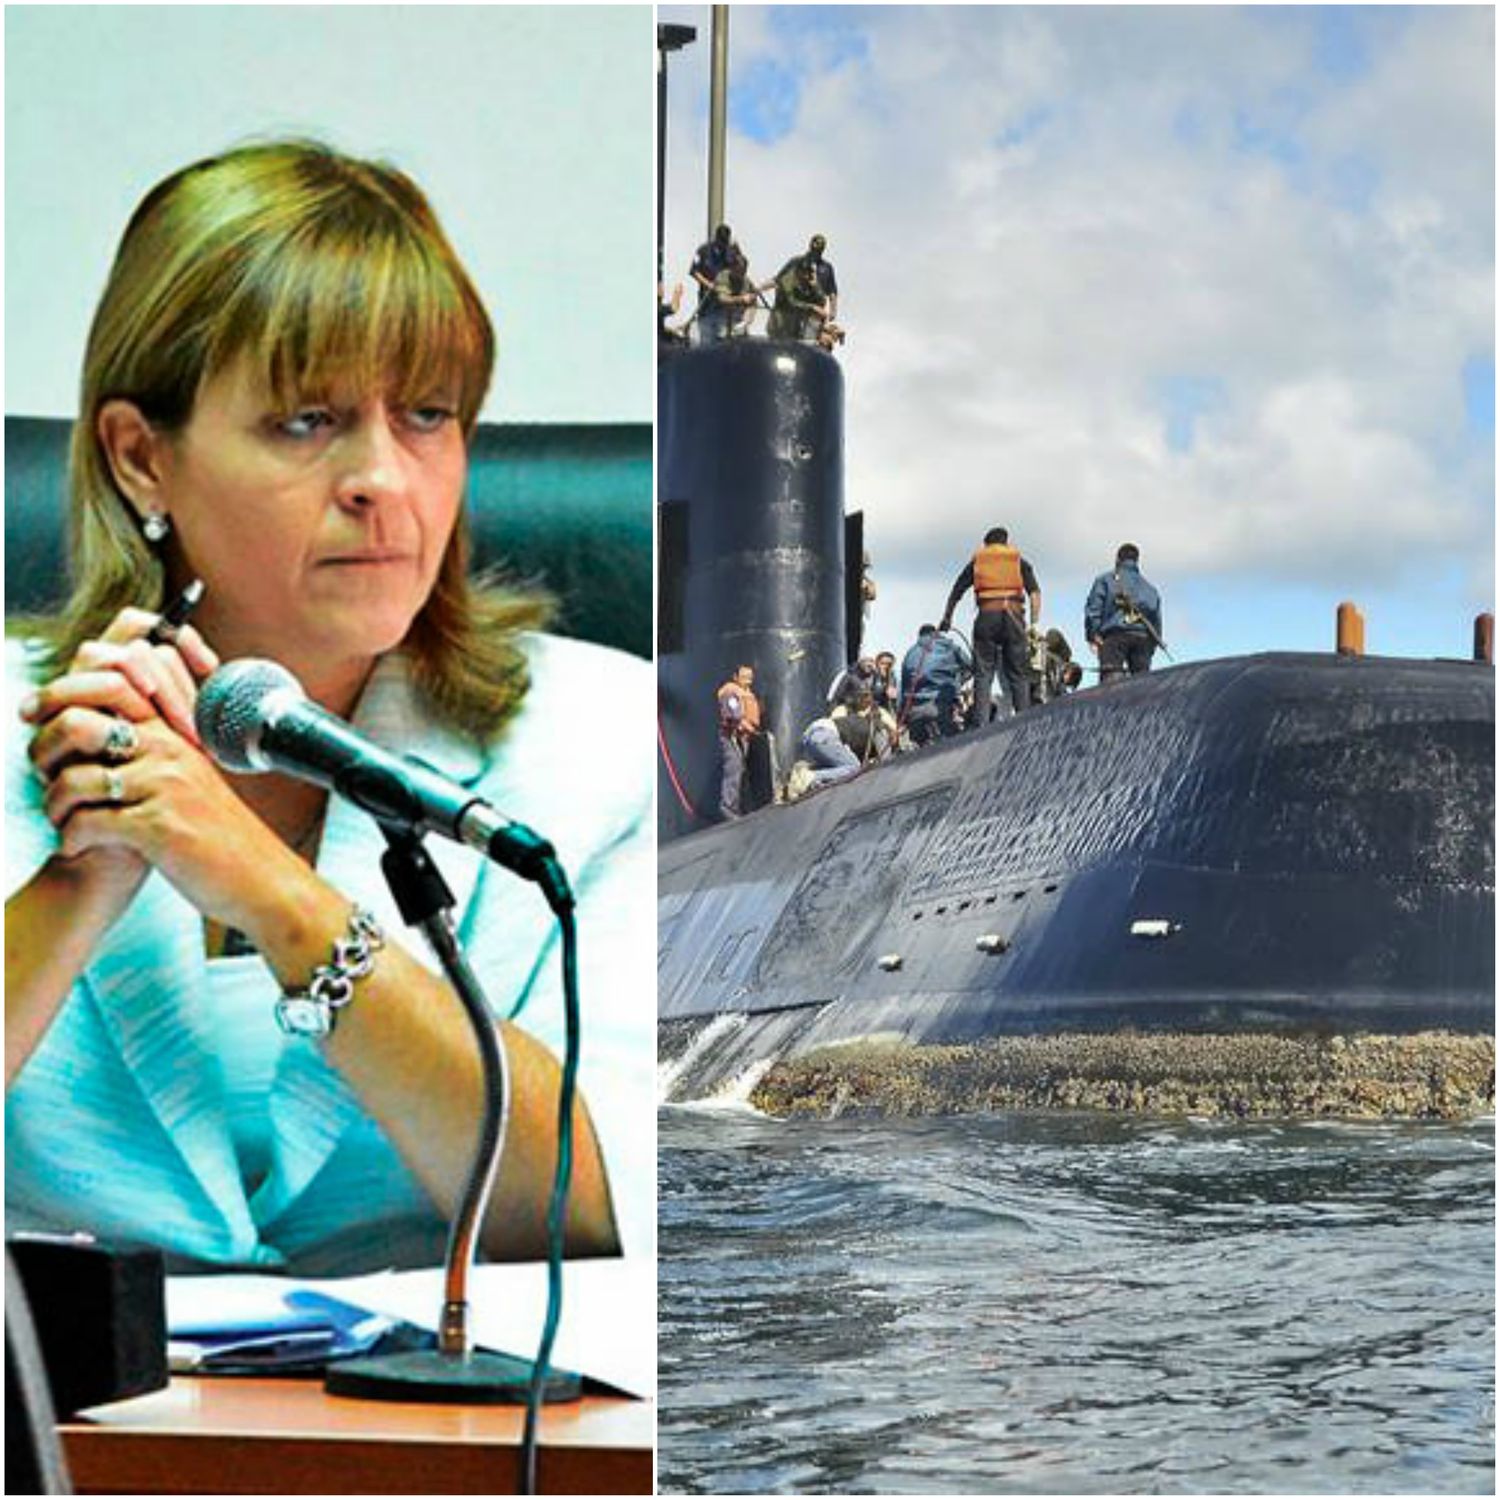 ARA San Juan: Evalúan que el submarino "no sea encontrado ni lo puedan reflotar”